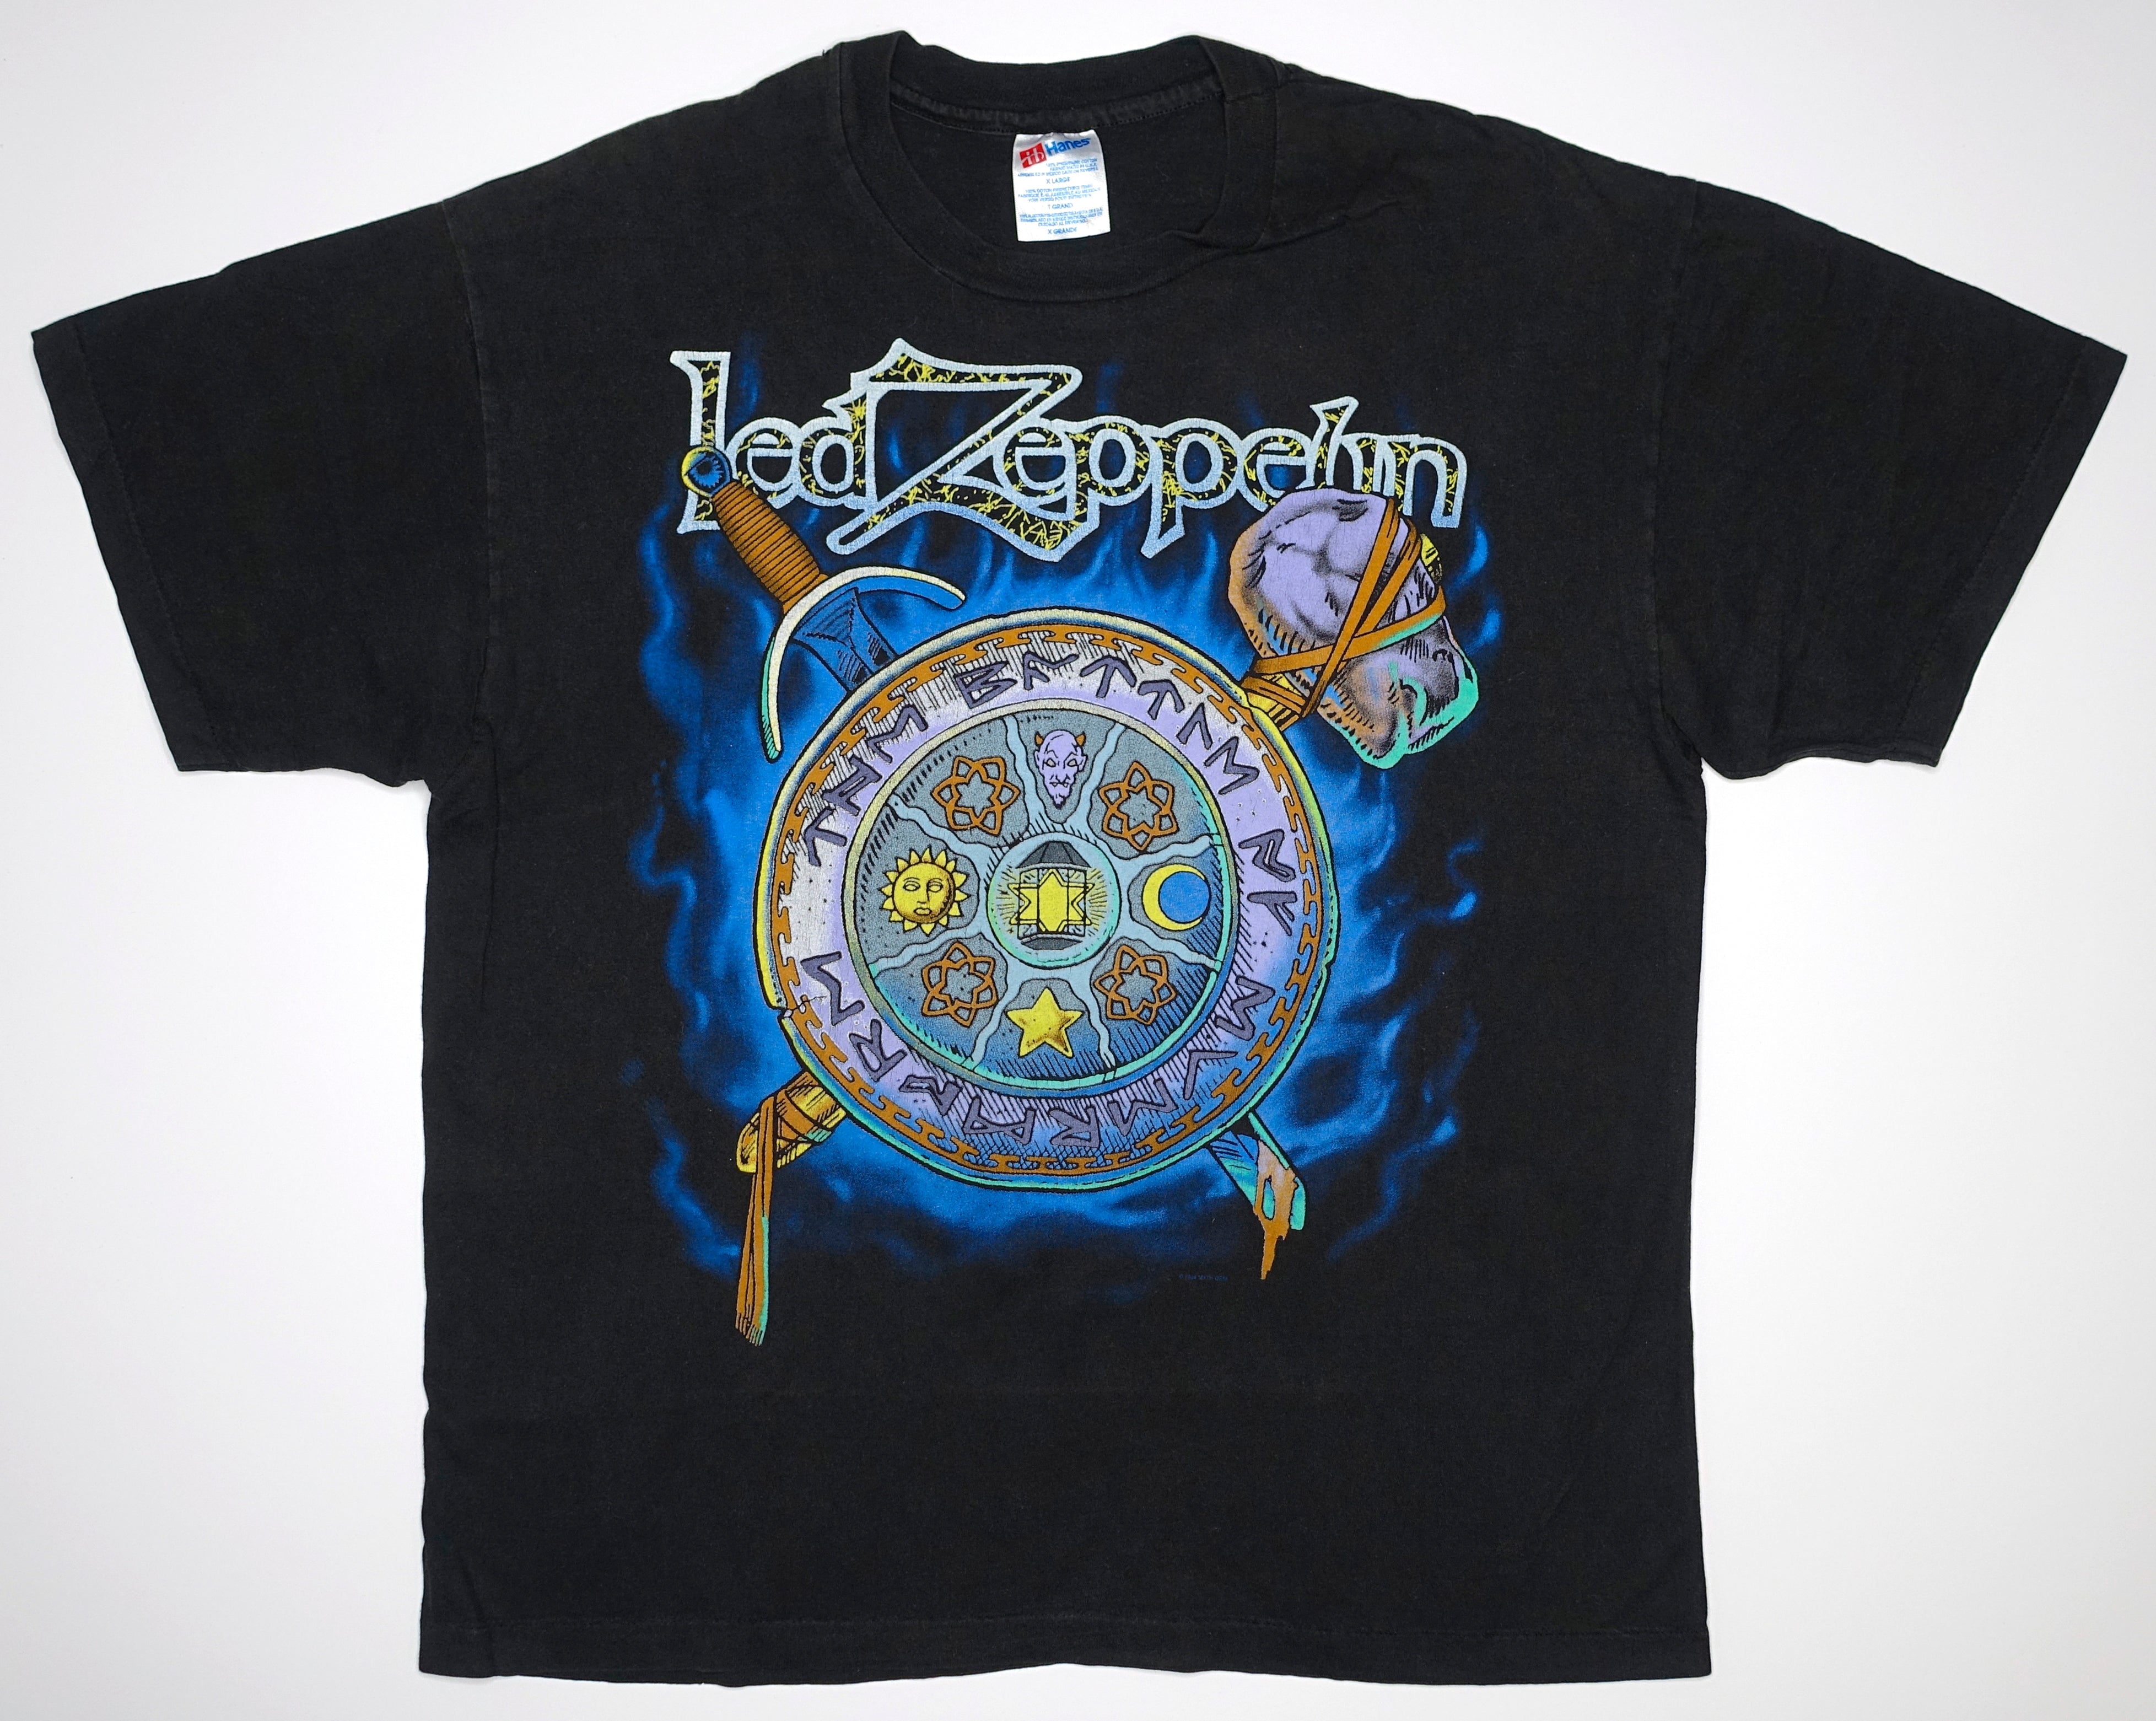 Led Zeppelin - ©1984 Myth Gem Shirt Size XL